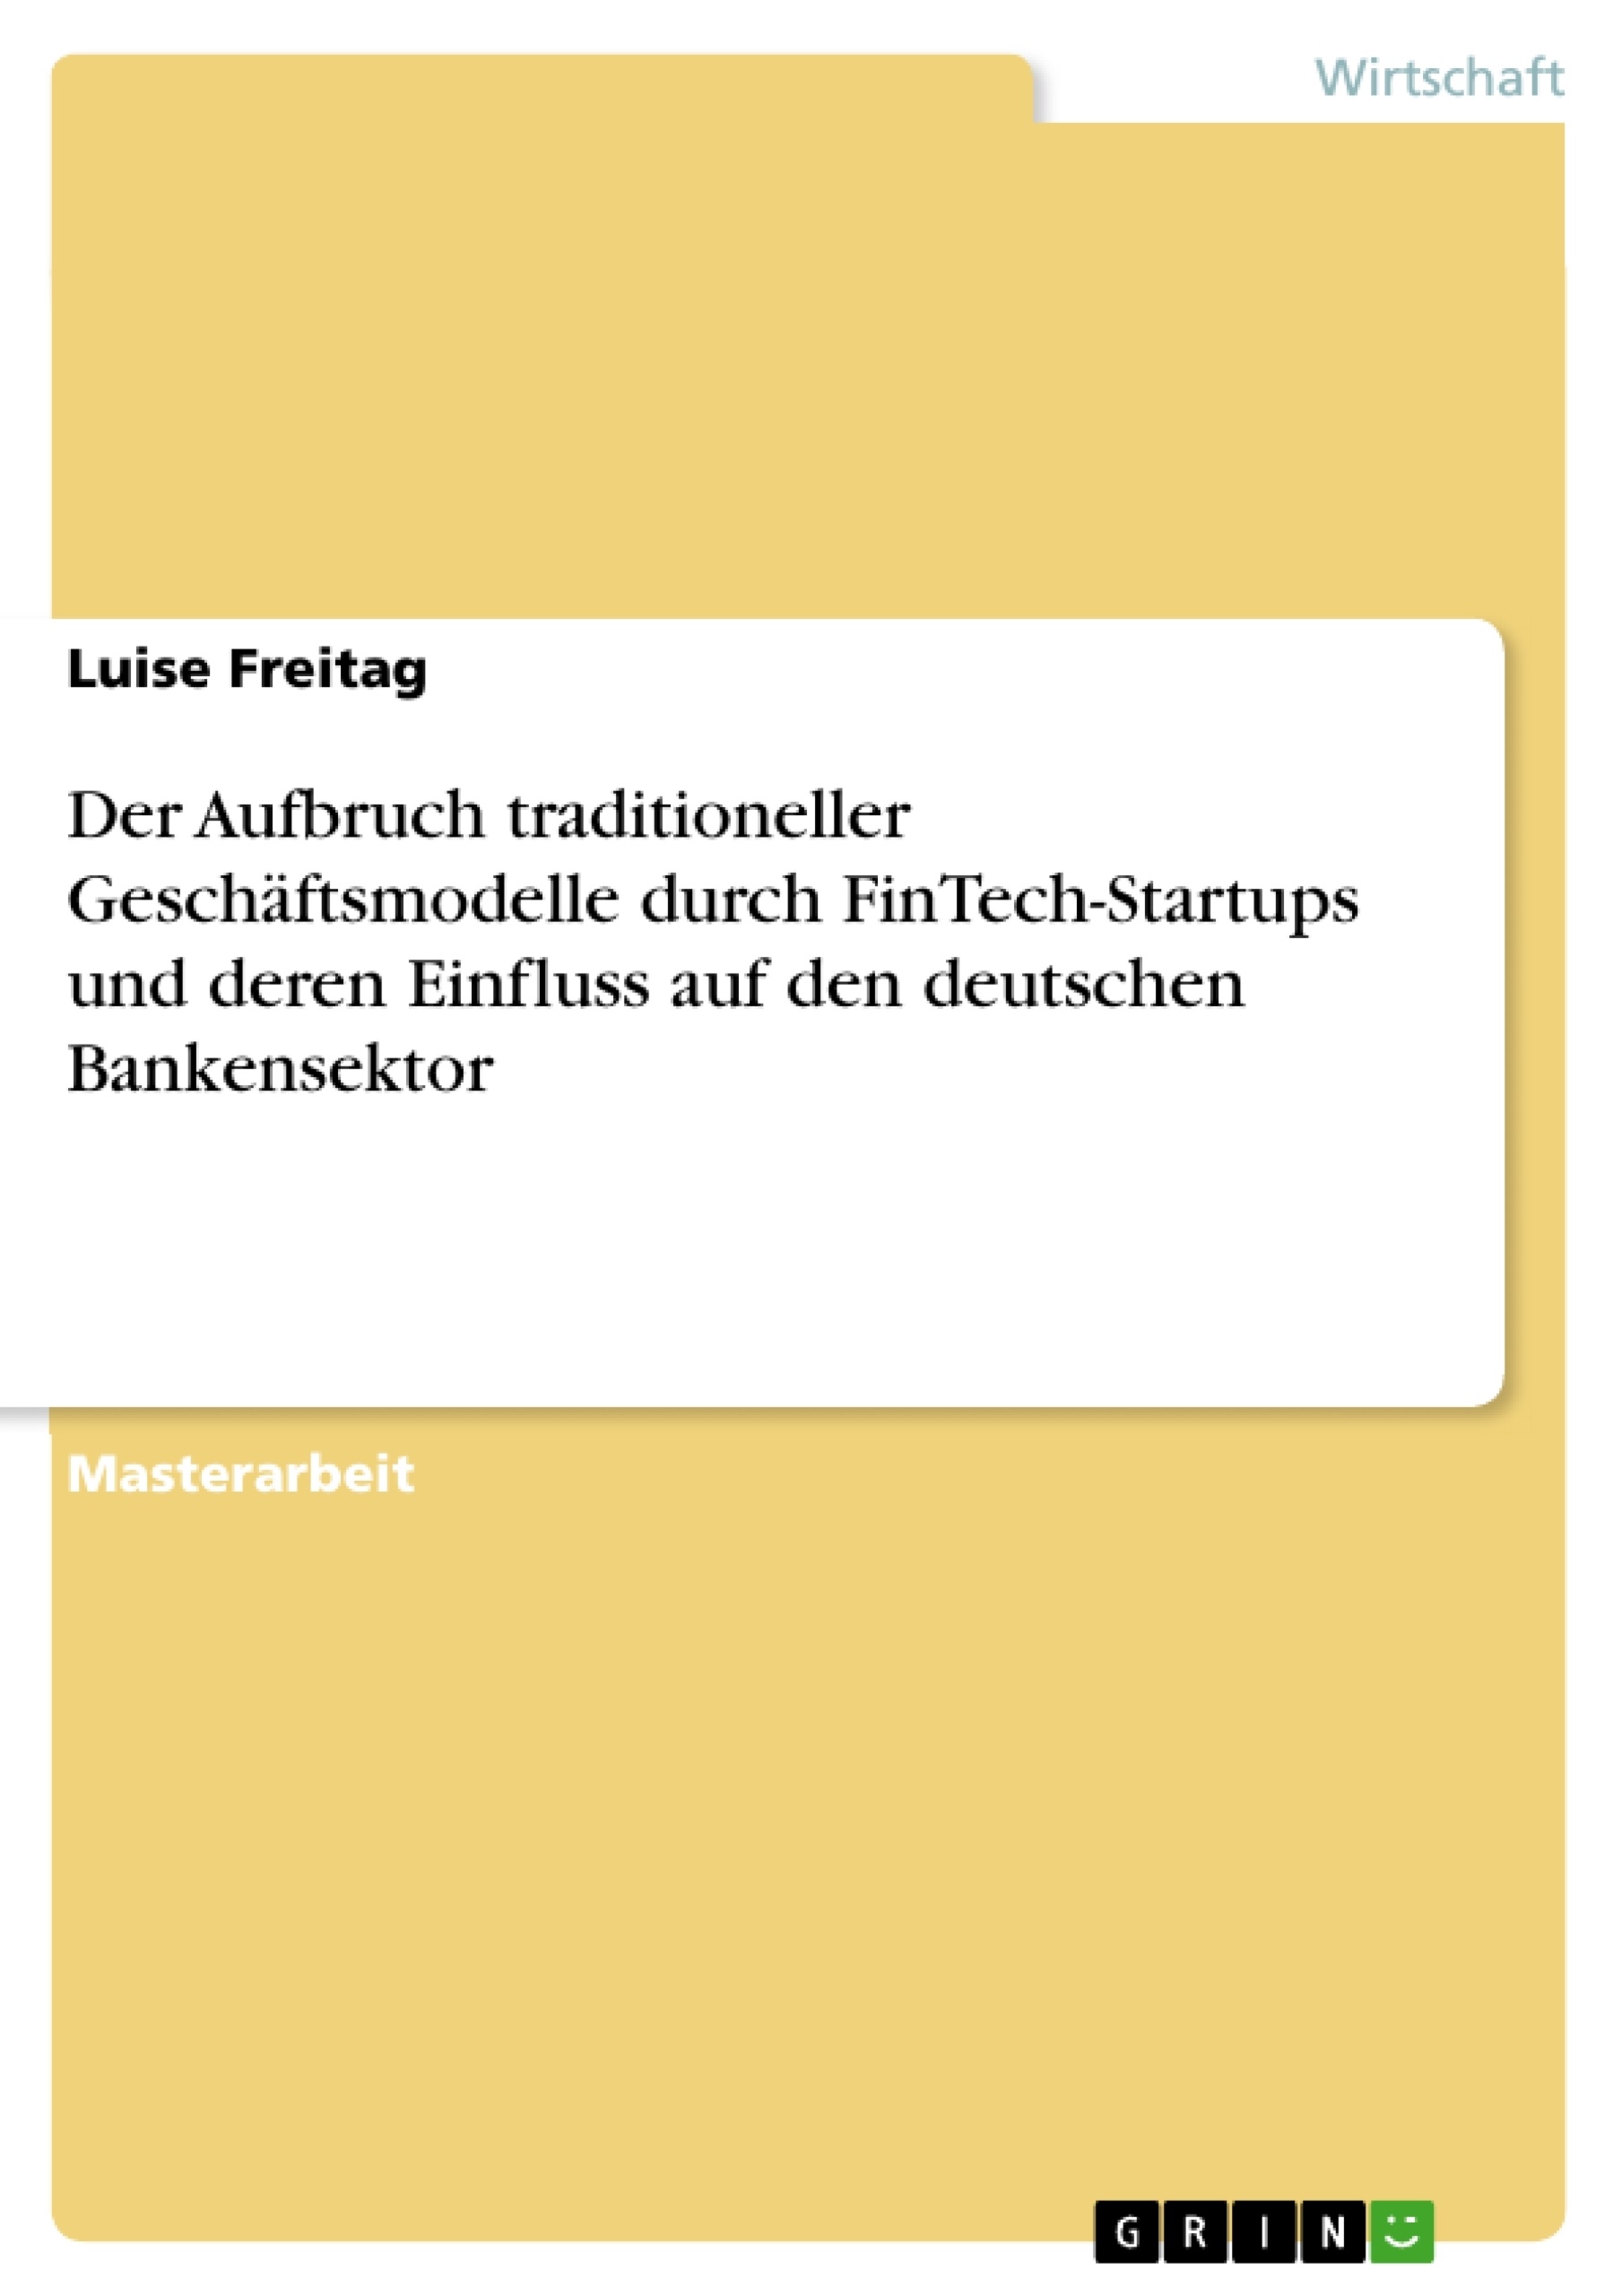 Título: Der Aufbruch traditioneller Geschäftsmodelle durch FinTech-Startups und deren Einfluss auf den deutschen Bankensektor